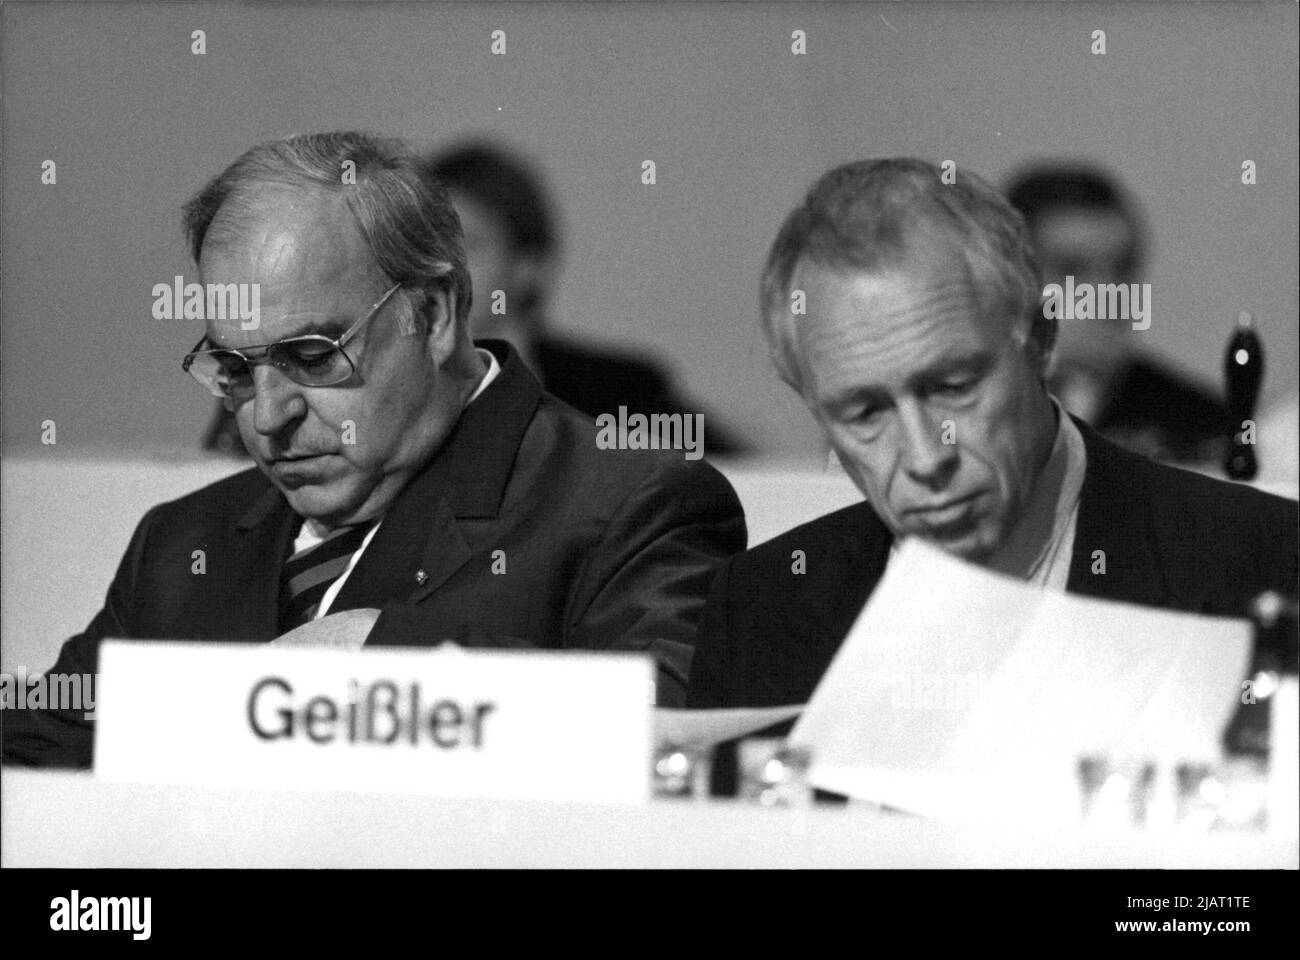 Bundeskanzler und CDU-Vorsitzender Helmut Kohl und Heiner Geißler auf dem CDU-Parteitag, Juni 1988. Stock Photo